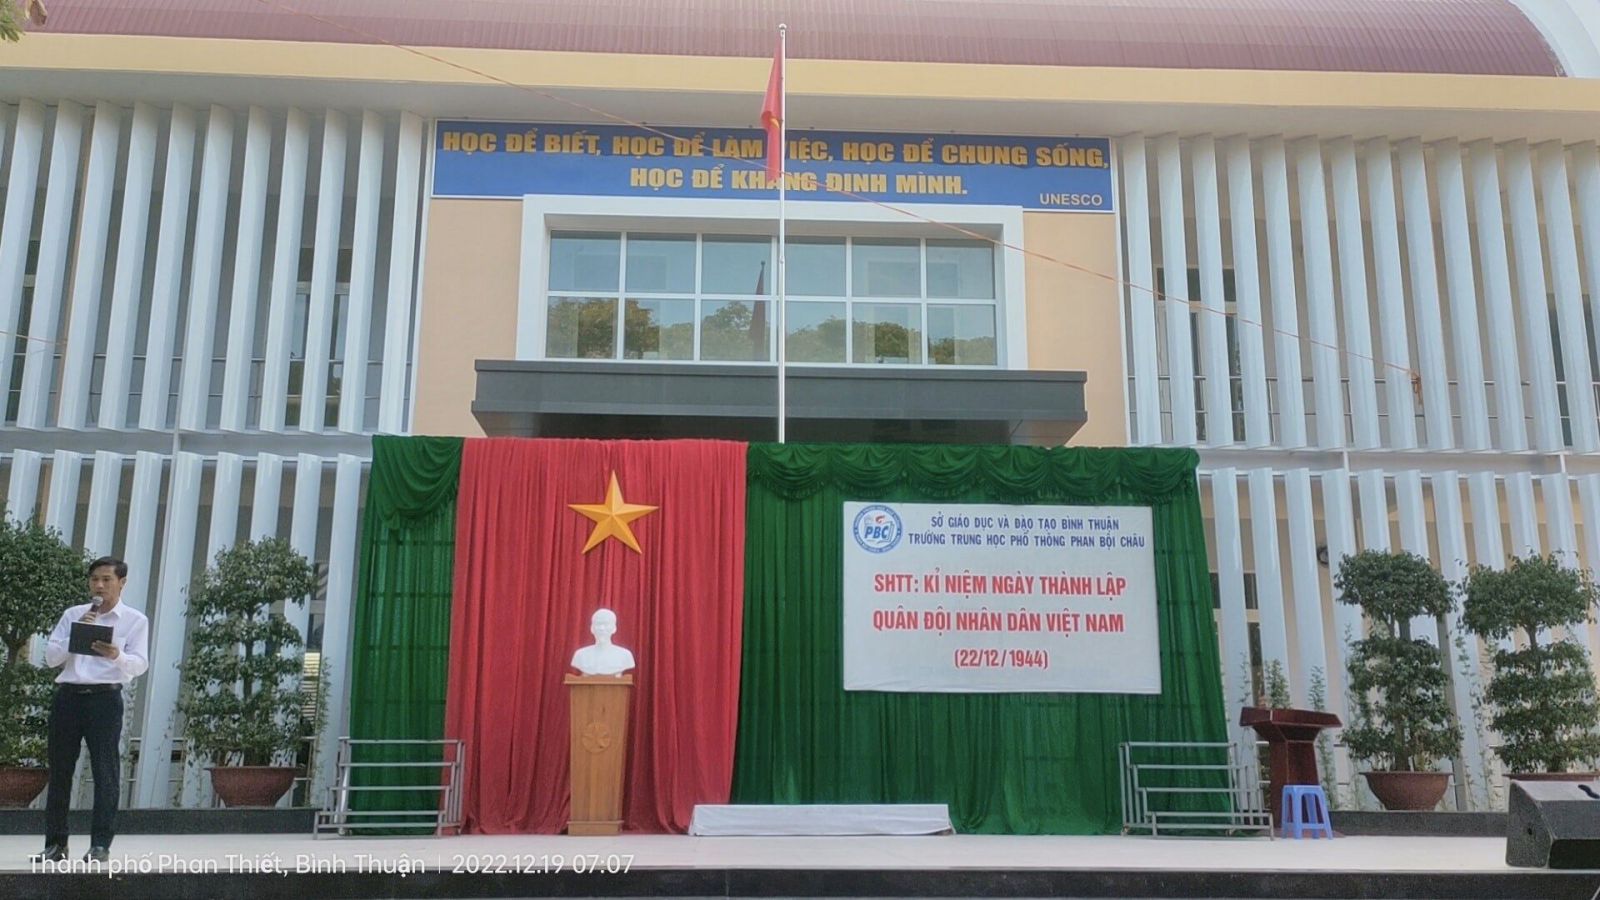 Sinh hoạt chào cờ tuần 16 "Kỉ niệm ngày thành lập Quân đội nhân dân Việt Nam 22/12/1944"